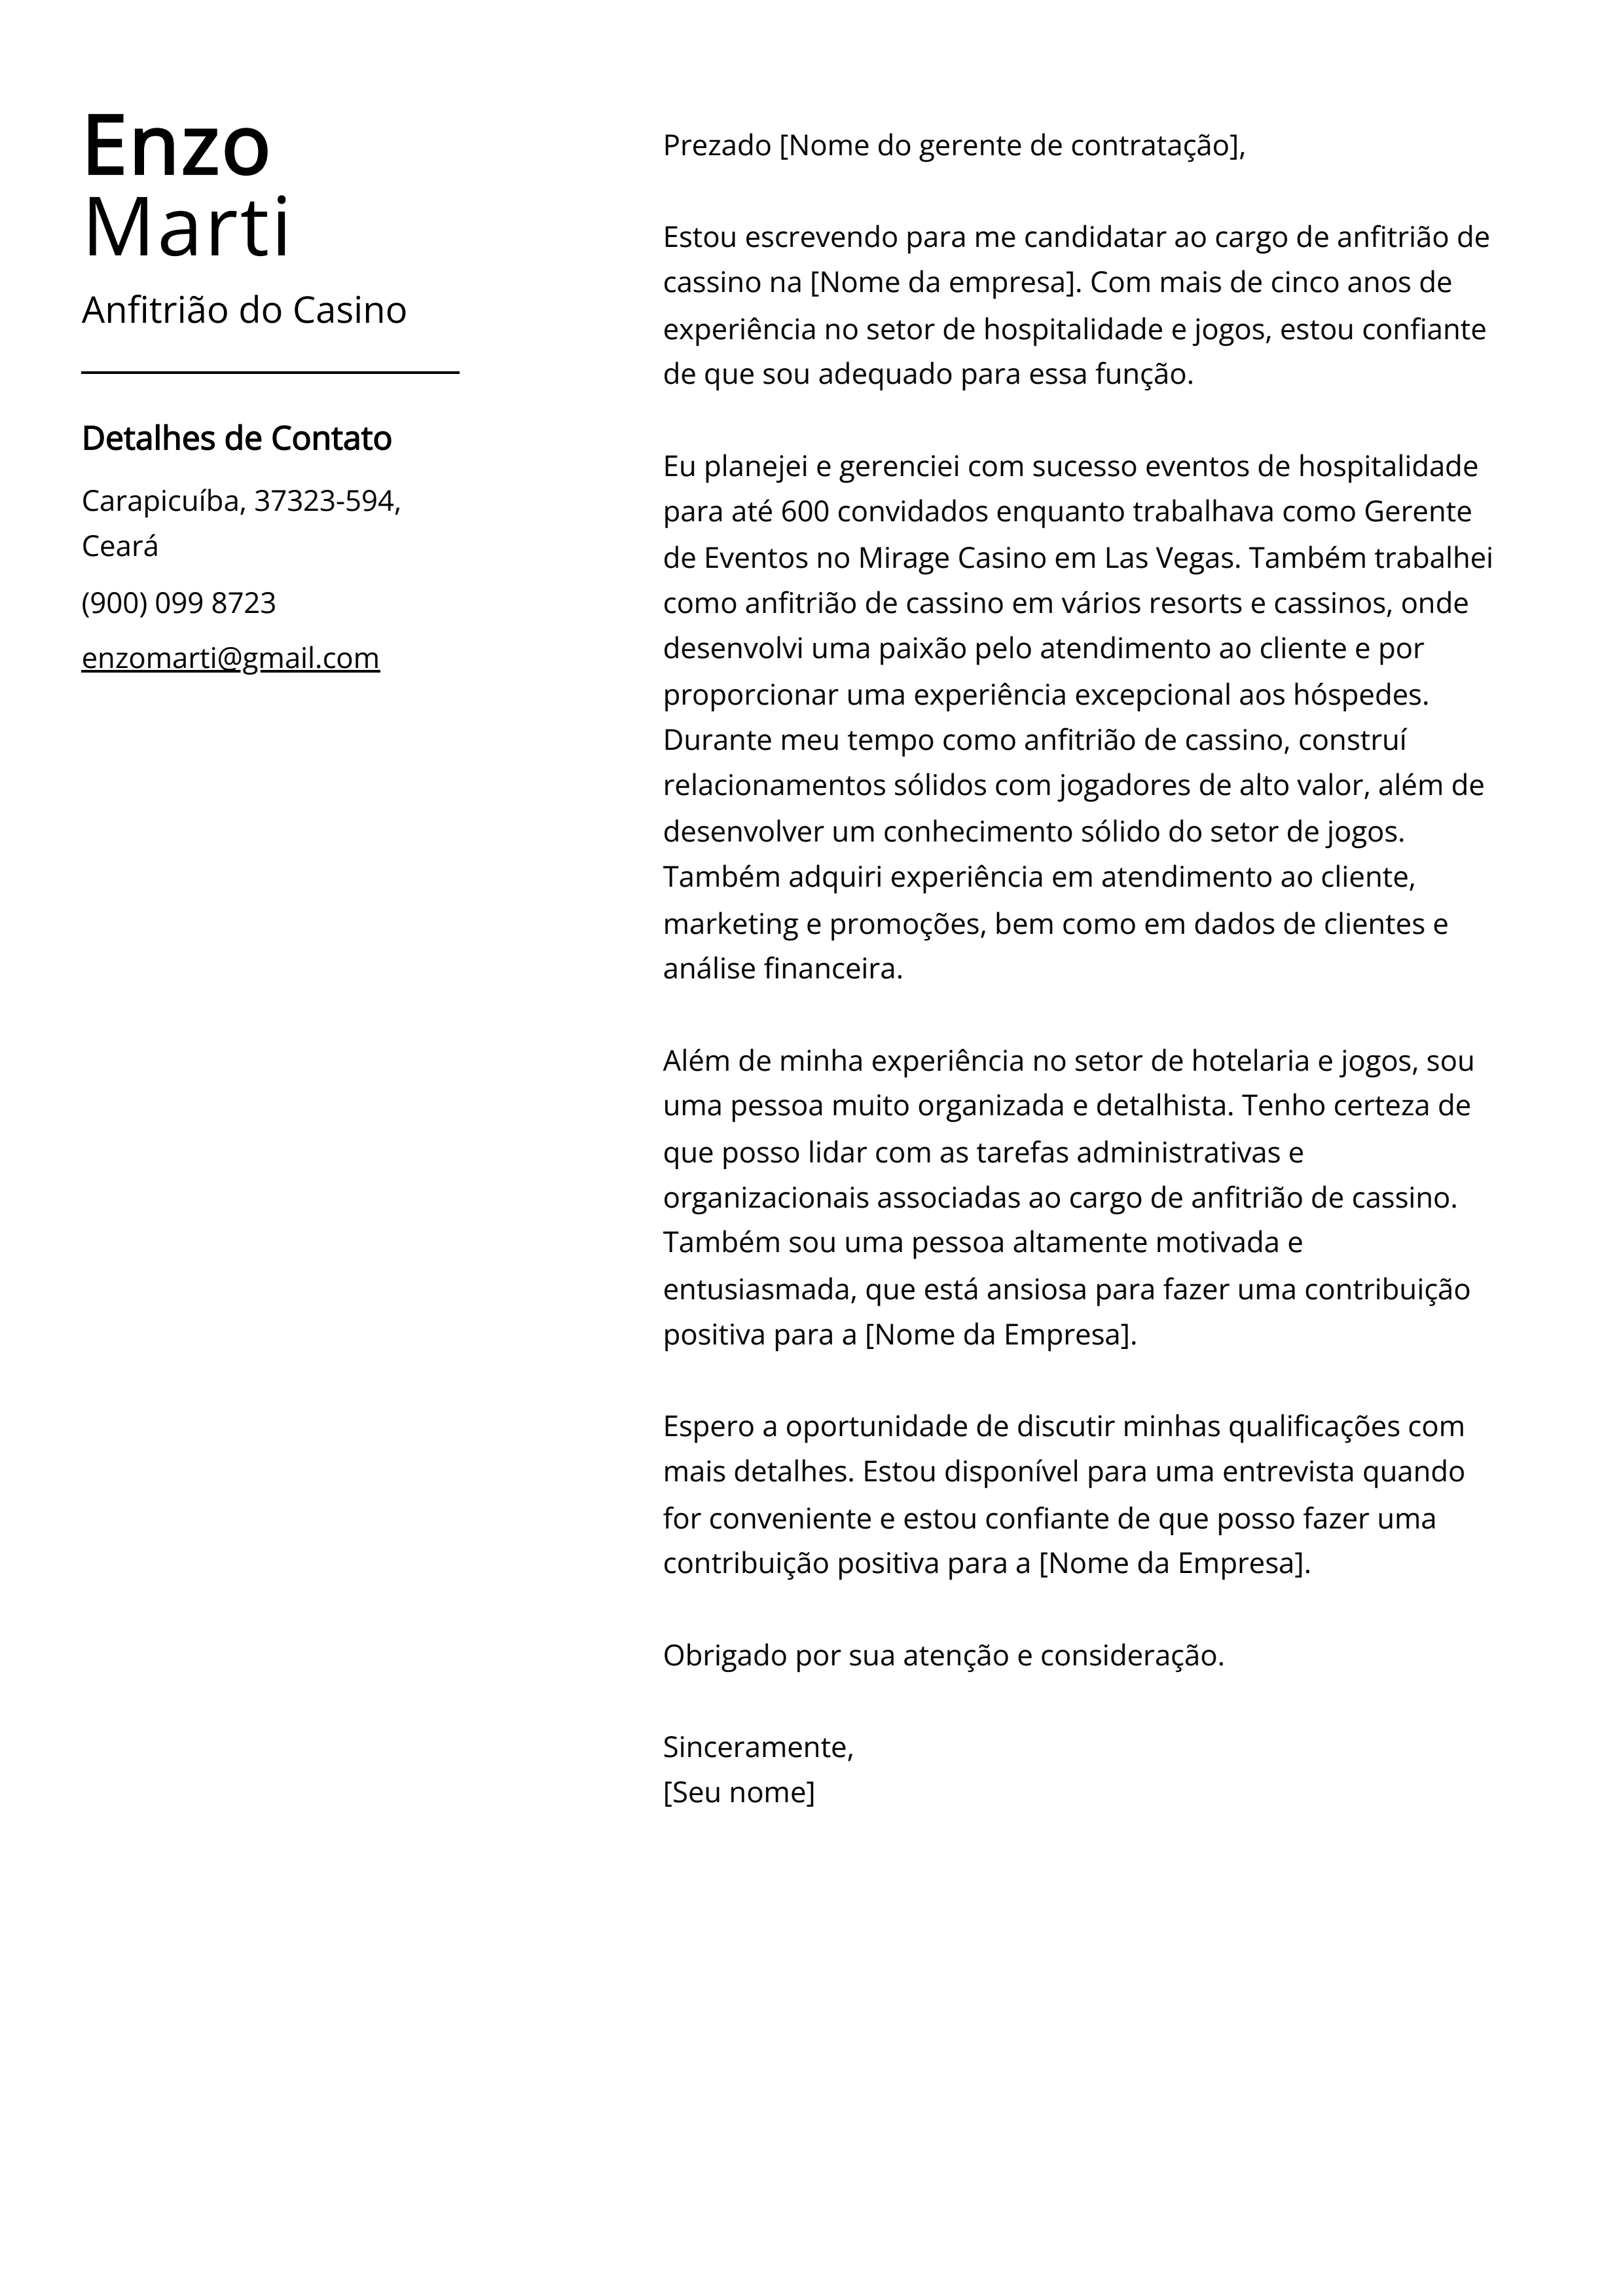 Exemplo de carta de apresentação do Anfitrião do Cassino